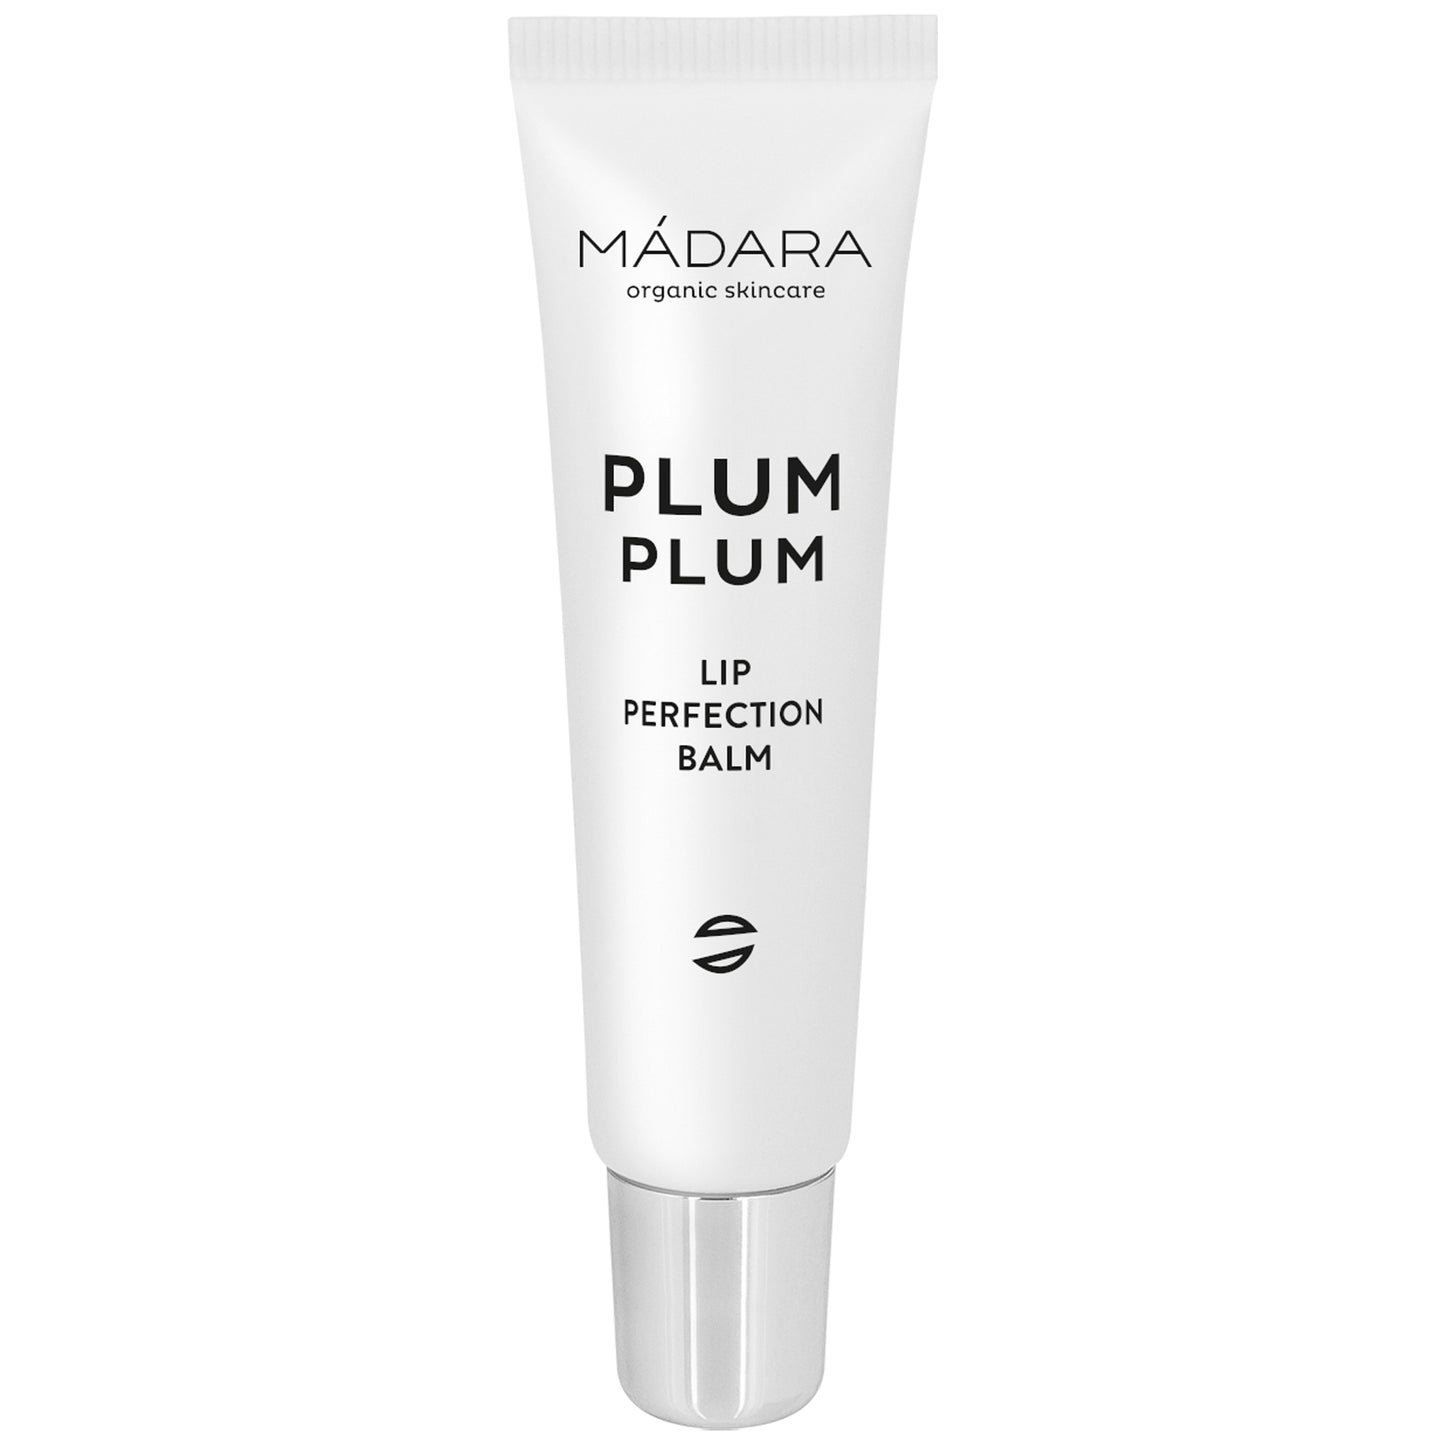 MADARA - Plum Plum lip balm 15ml